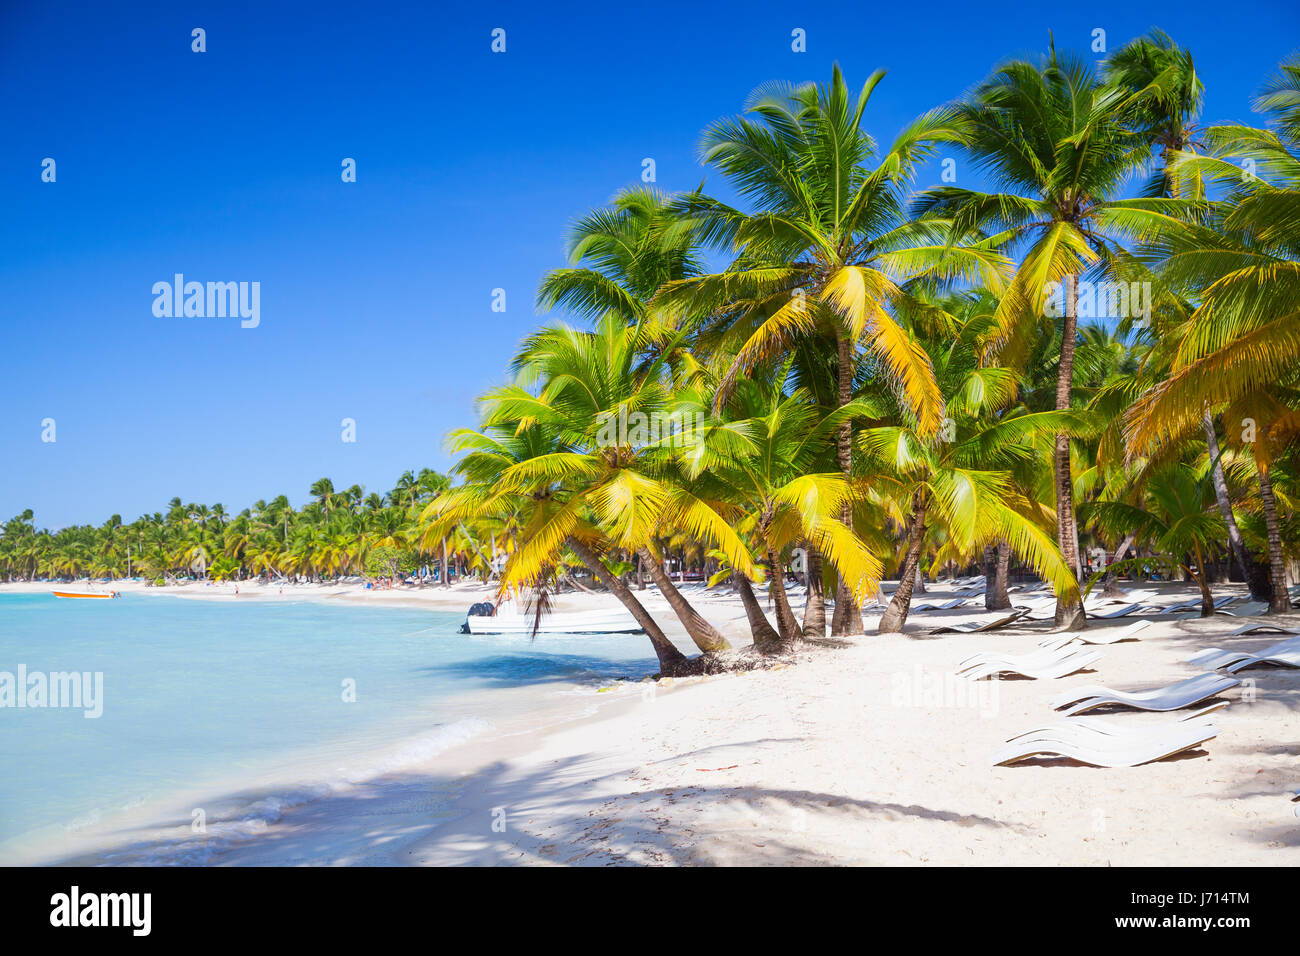 Gli alberi di palma che cresce su una spiaggia di sabbia. Mar dei Caraibi costa. Repubblica dominicana paesaggio, Saona Island, popolare località turistica Foto Stock